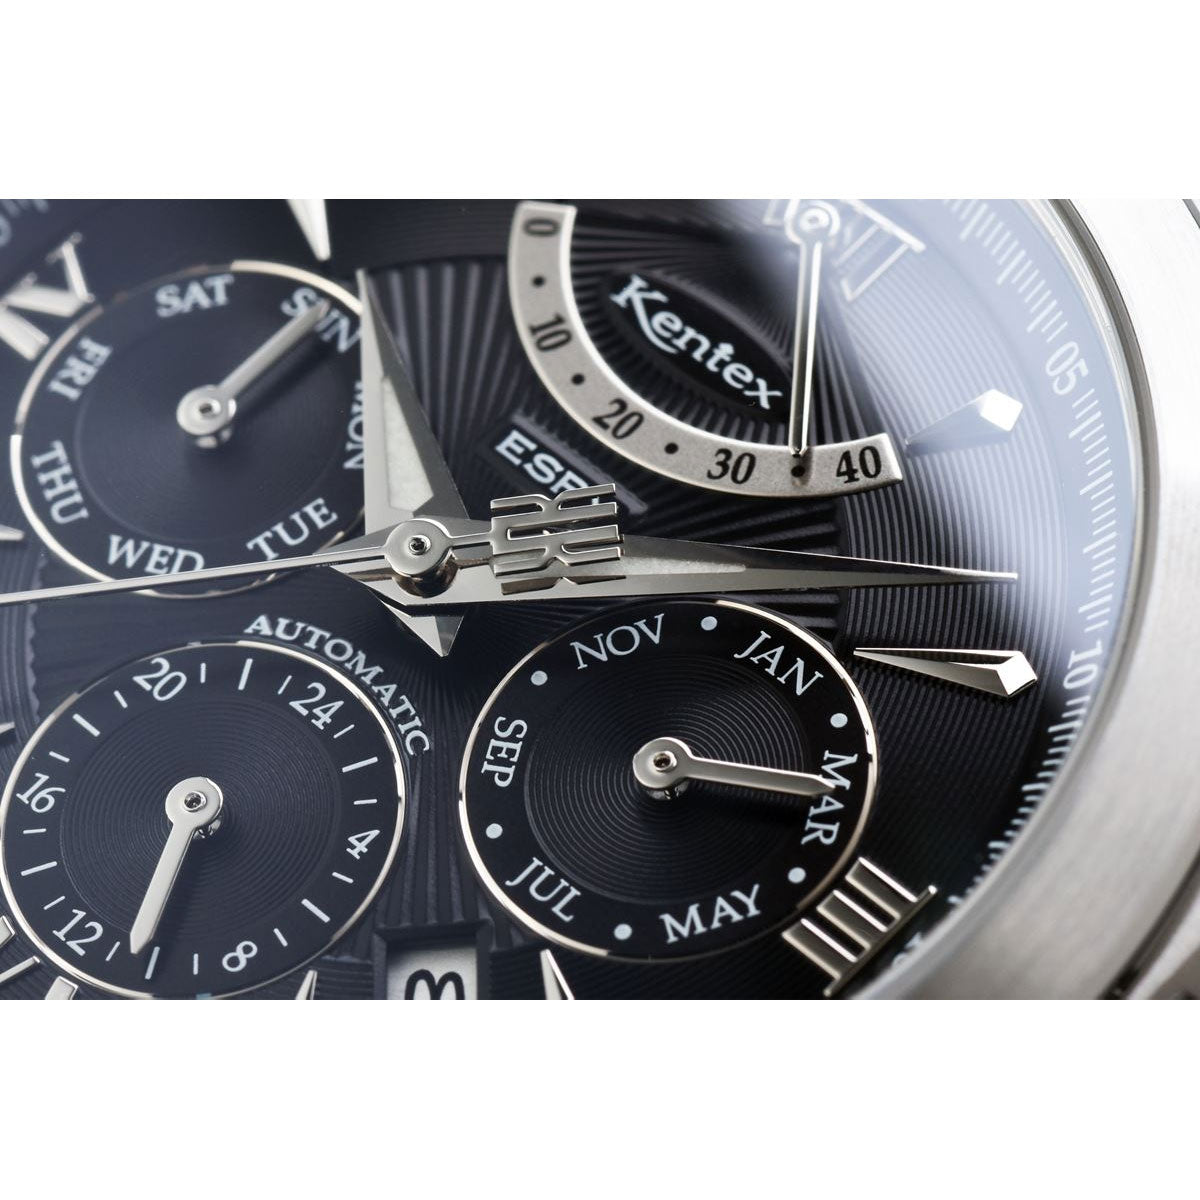 ケンテックス KENTEX 腕時計 時計 メンズ 日本製 自動巻き マルチファンクション エスパイ アクティブ2 ESPY ACTIVE II E546M-9 ブラック